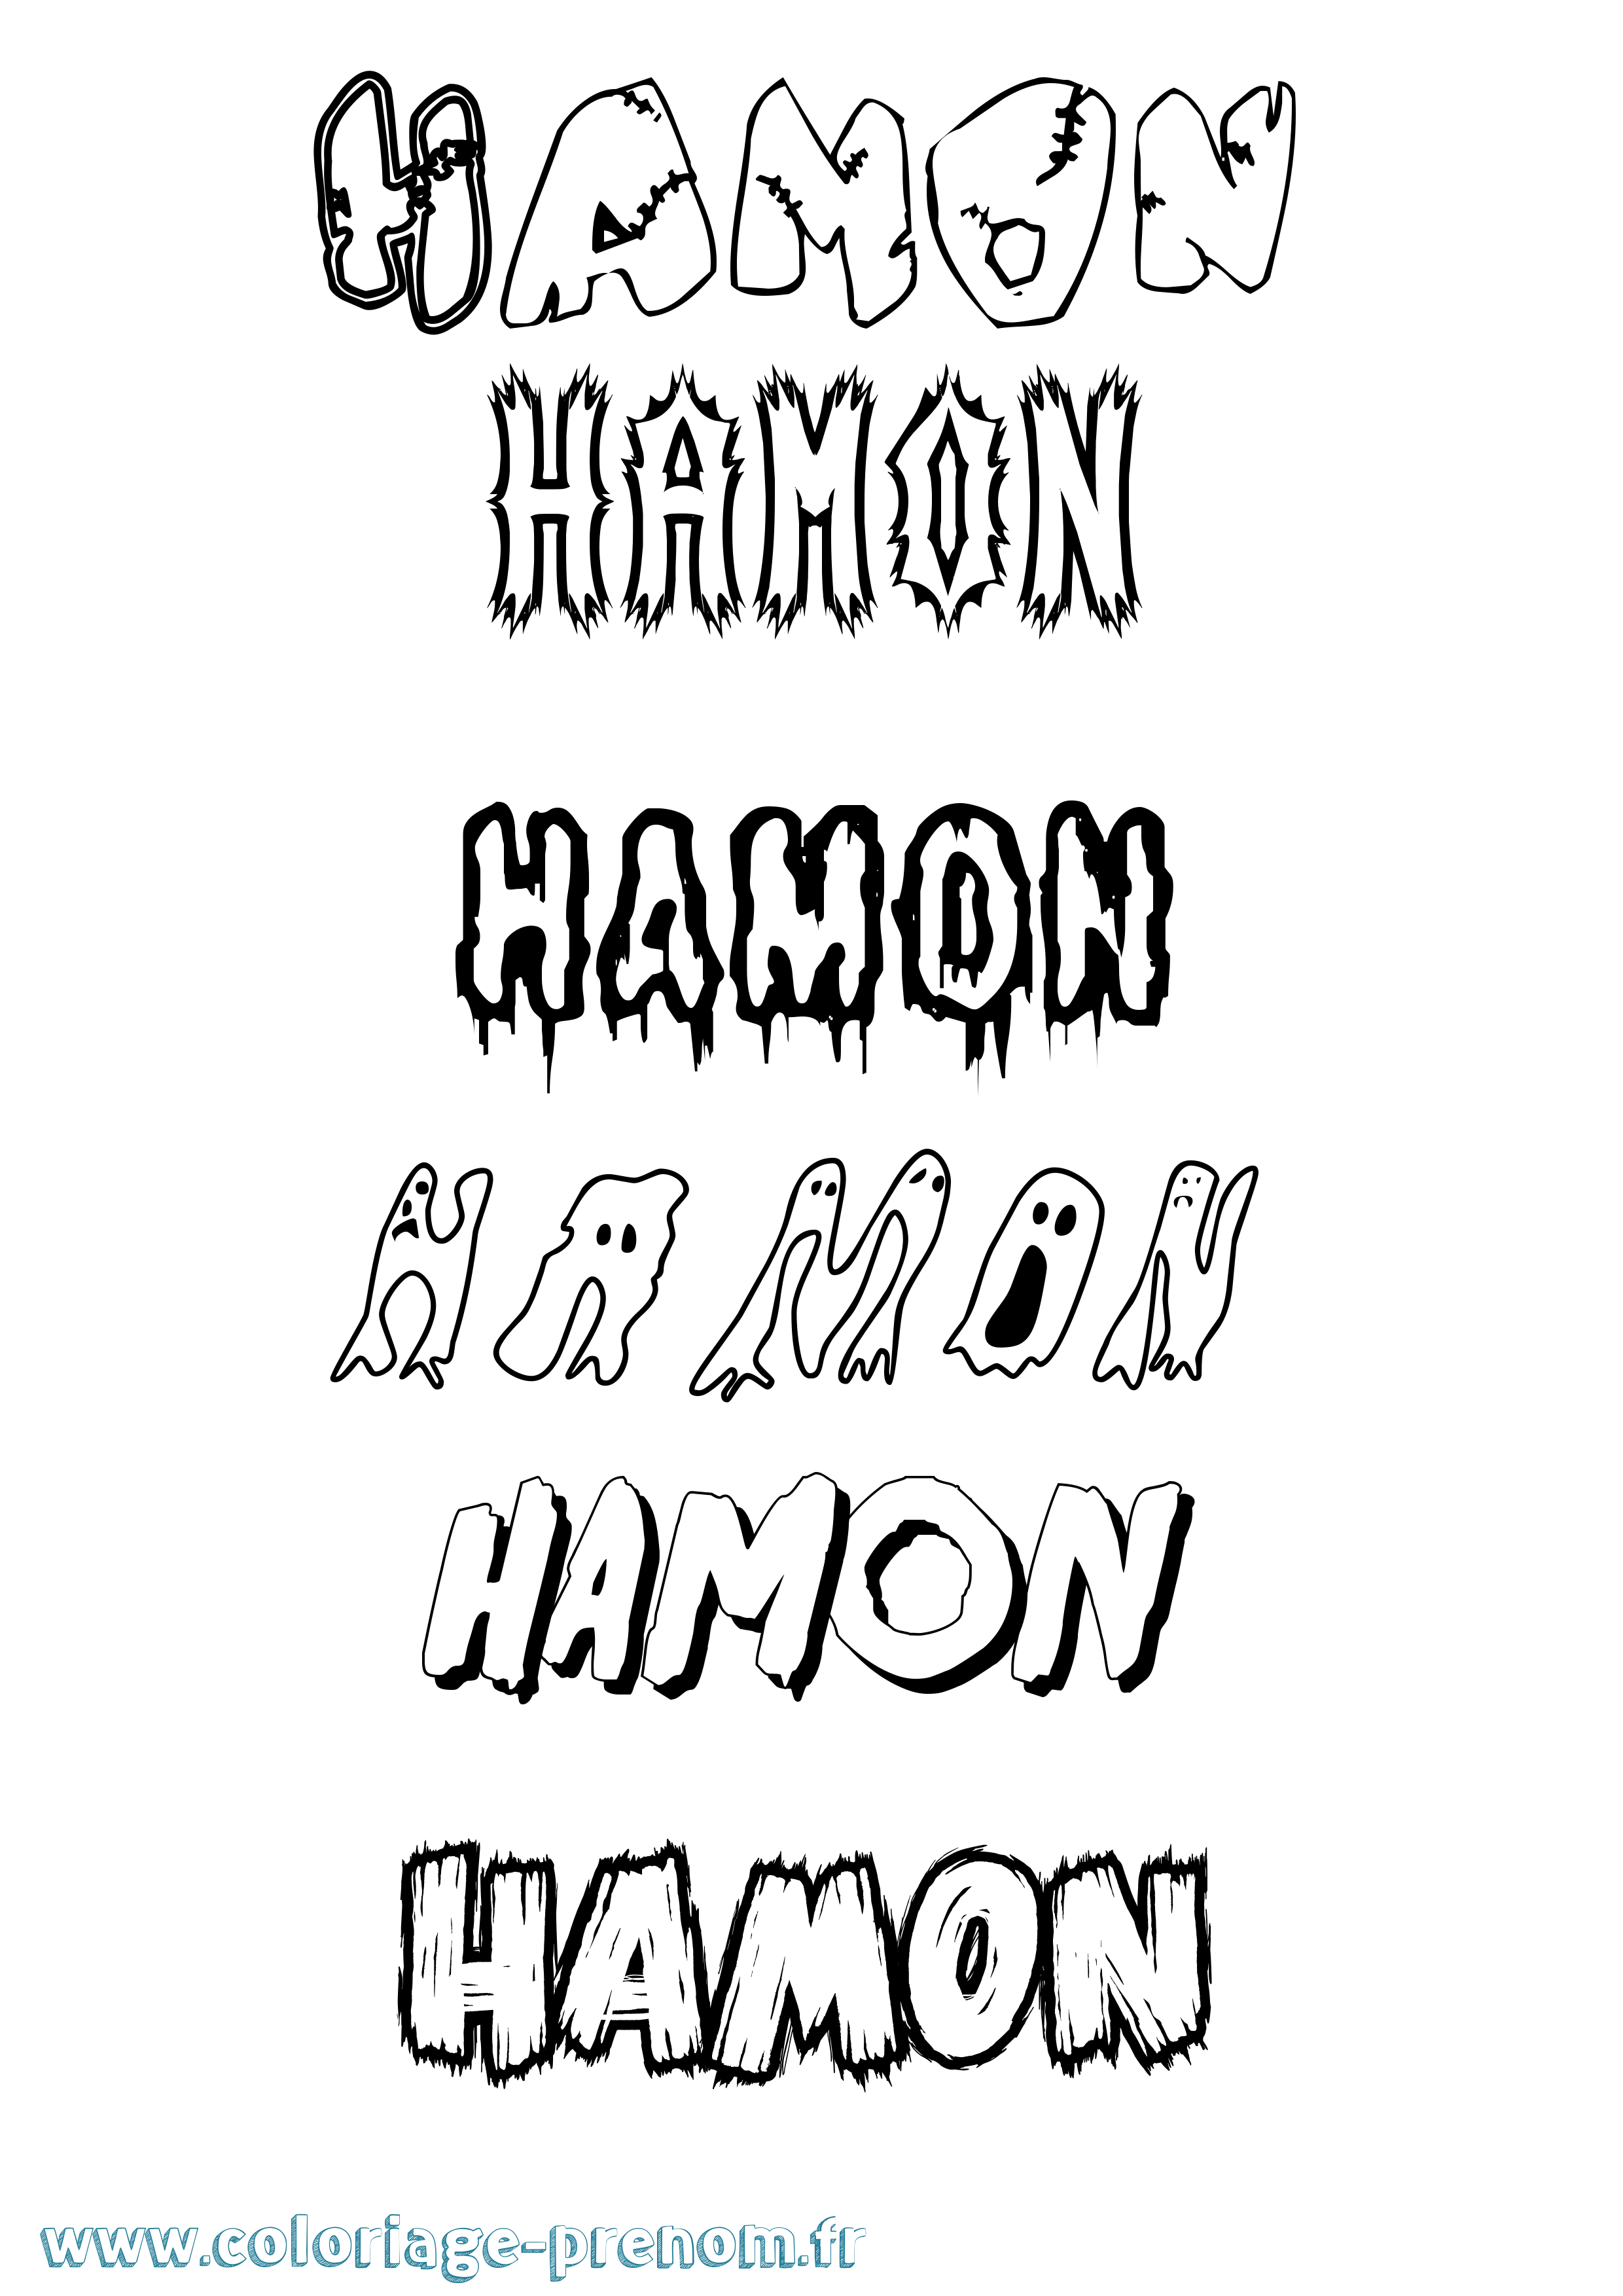 Coloriage prénom Hamon Frisson